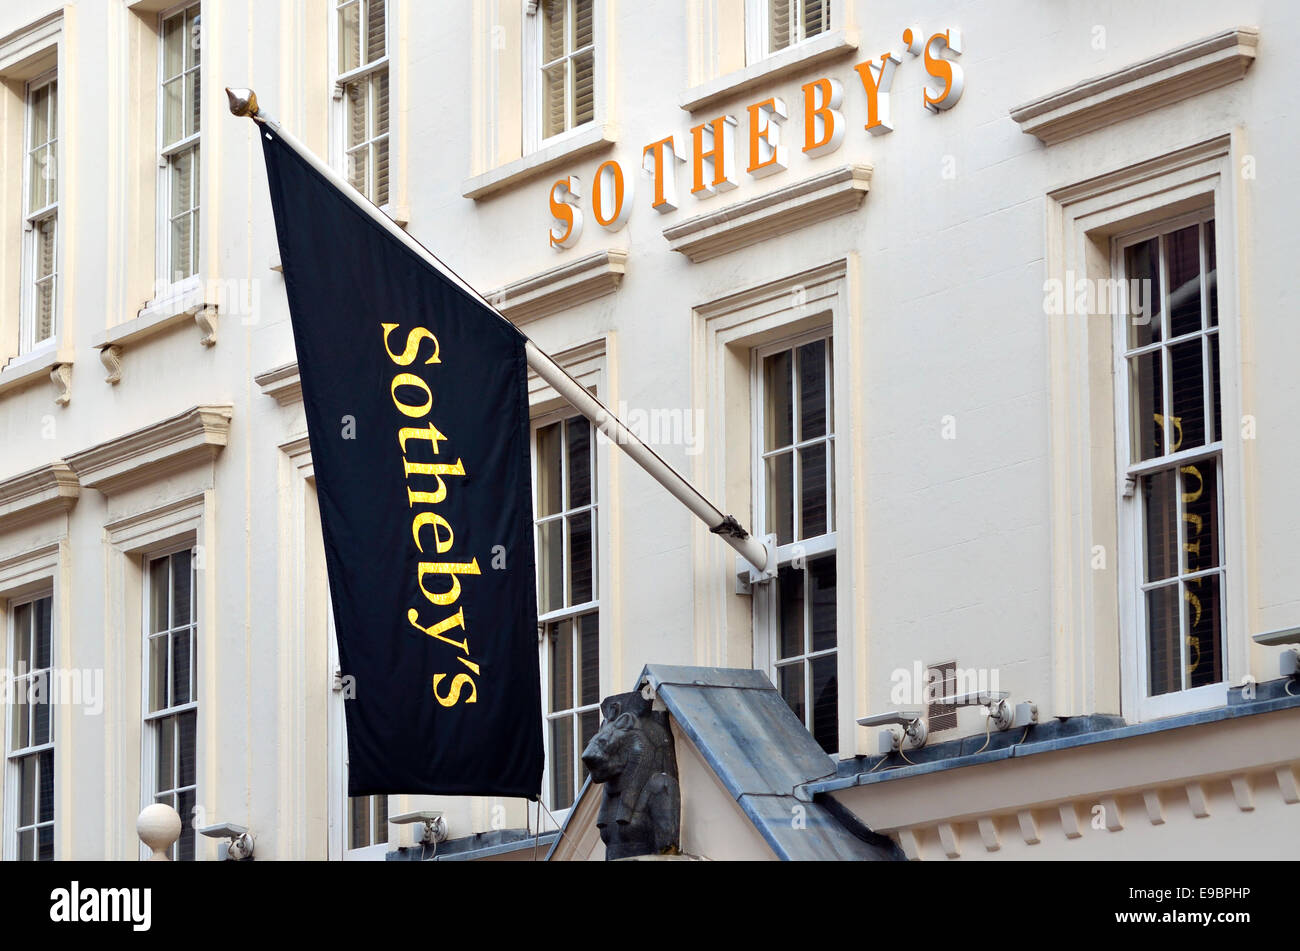 Londres, Angleterre, Royaume-Uni. La maison d'enchères Southeby dans Bond Street Banque D'Images